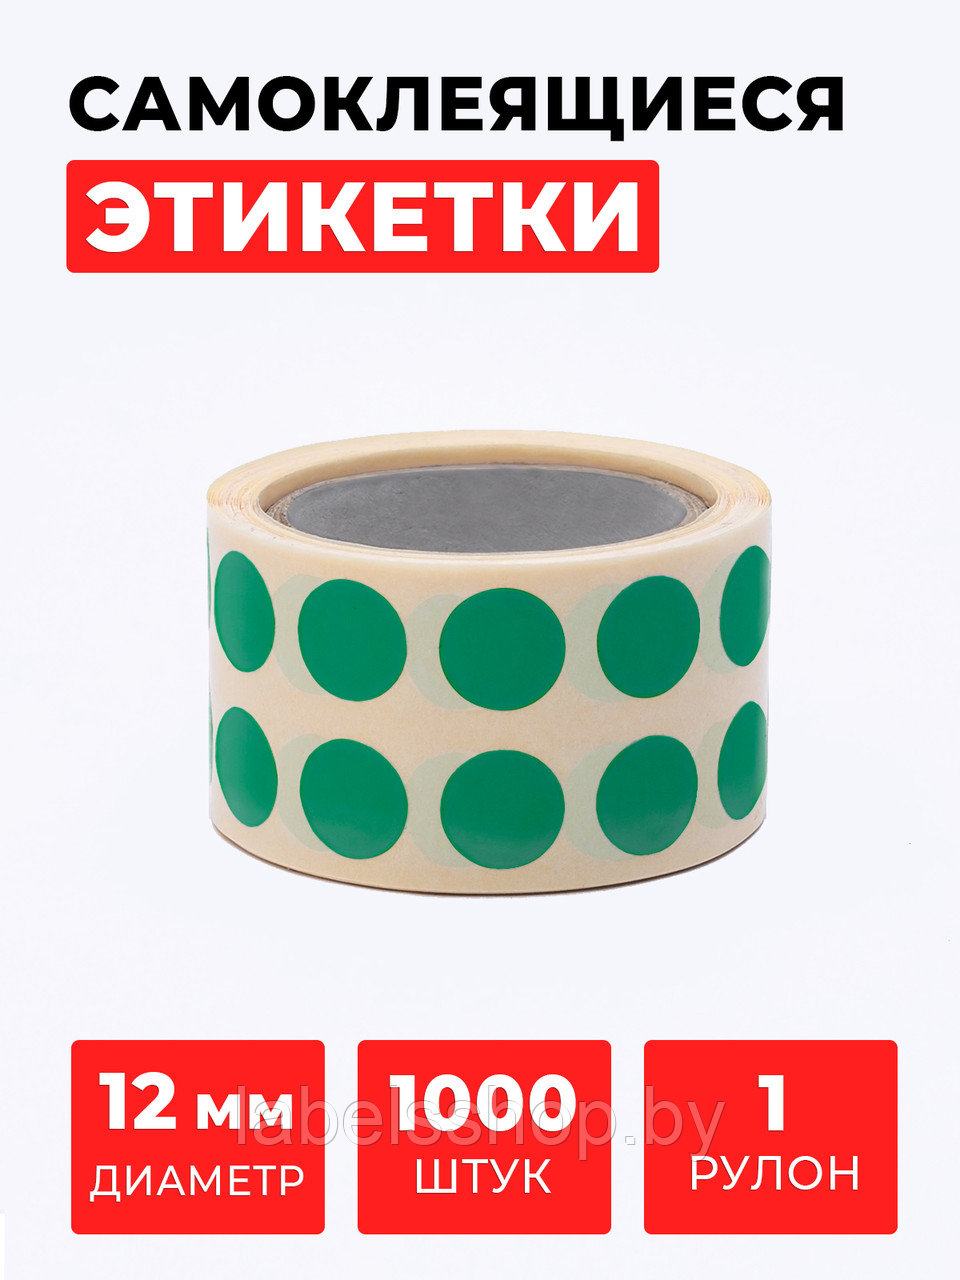 Круглые самоклеящиеся наклейки / этикетки в виде круга (D 12 мм), цвет зеленый, 1000 шт в ролике.